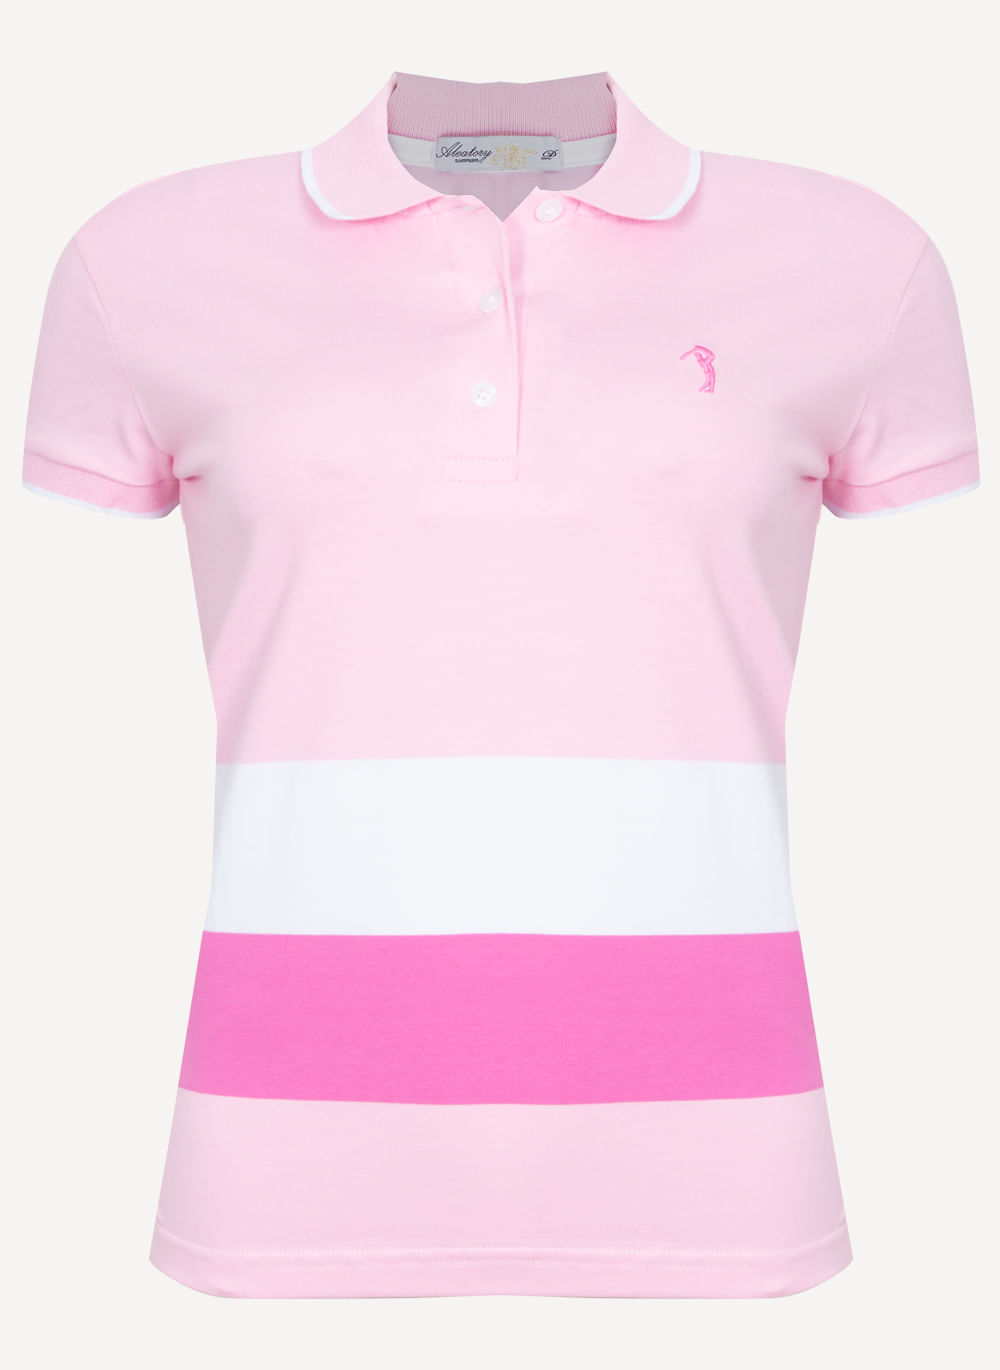 Camisa-Polo-Feminina-Aleatory-First-Rosa-Rosa-P